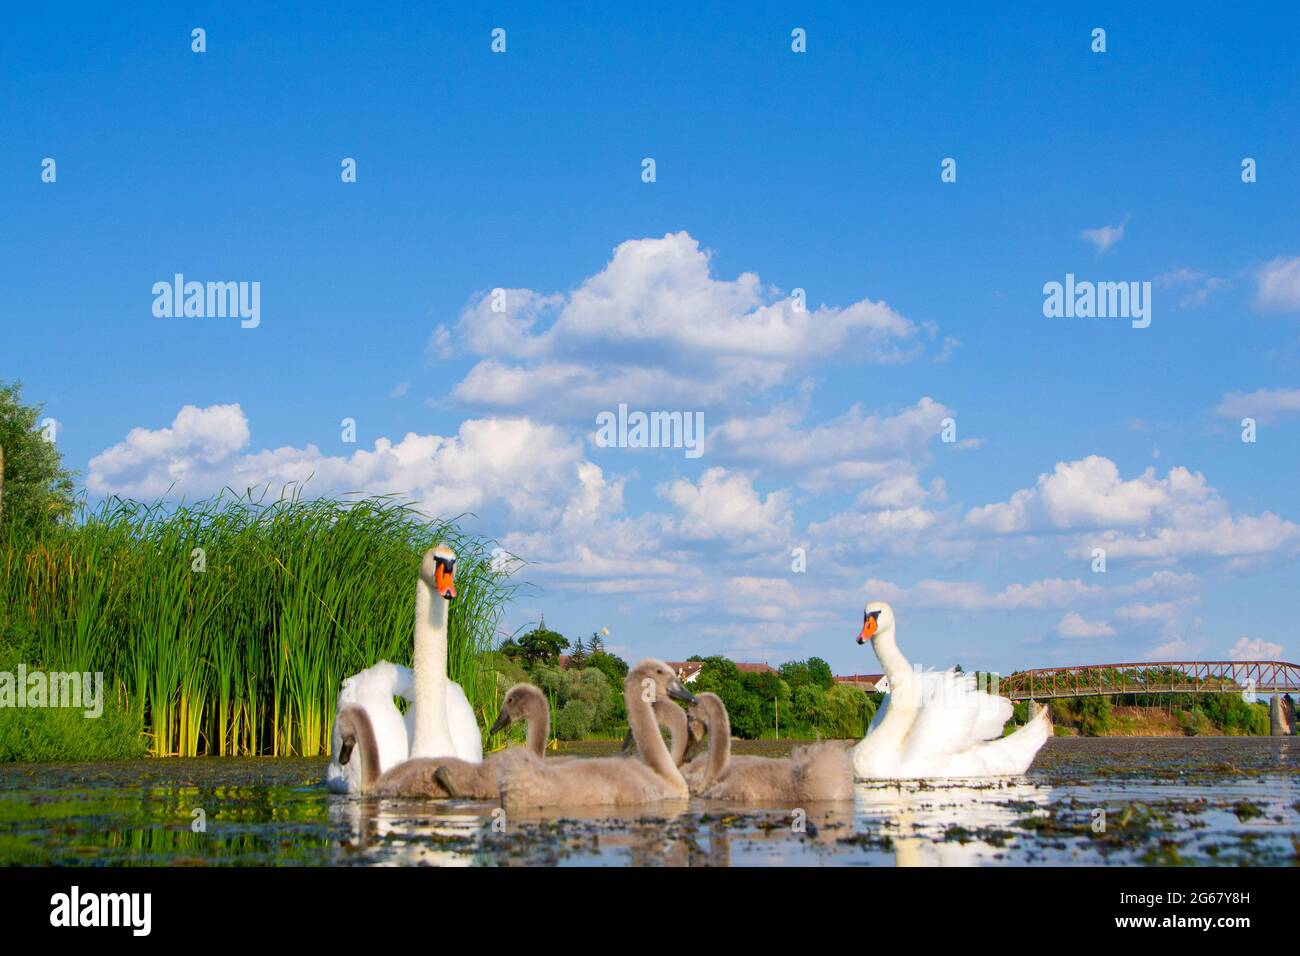 Cigni con i loro giovani sul fiume Studva - immagine Foto Stock